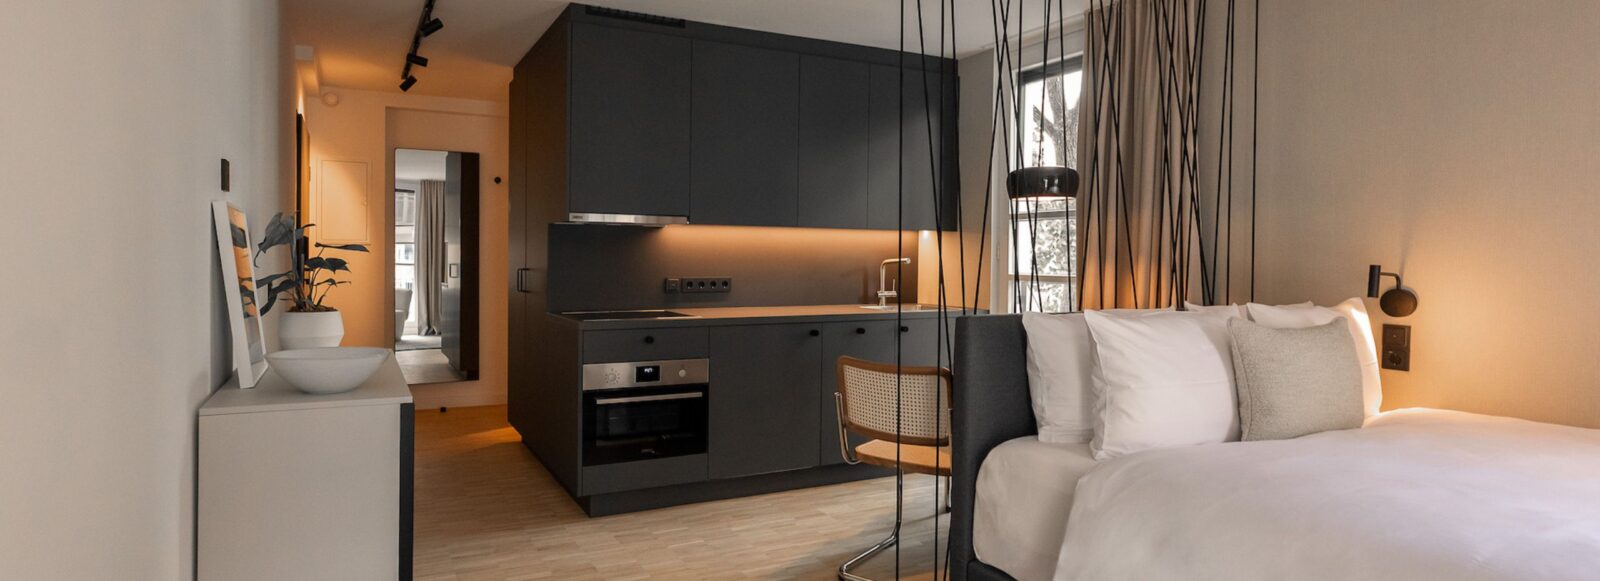 Blick in ein Serviced Apartmentzimmer von HApato mit Küche, Ess- und Schlafbereich